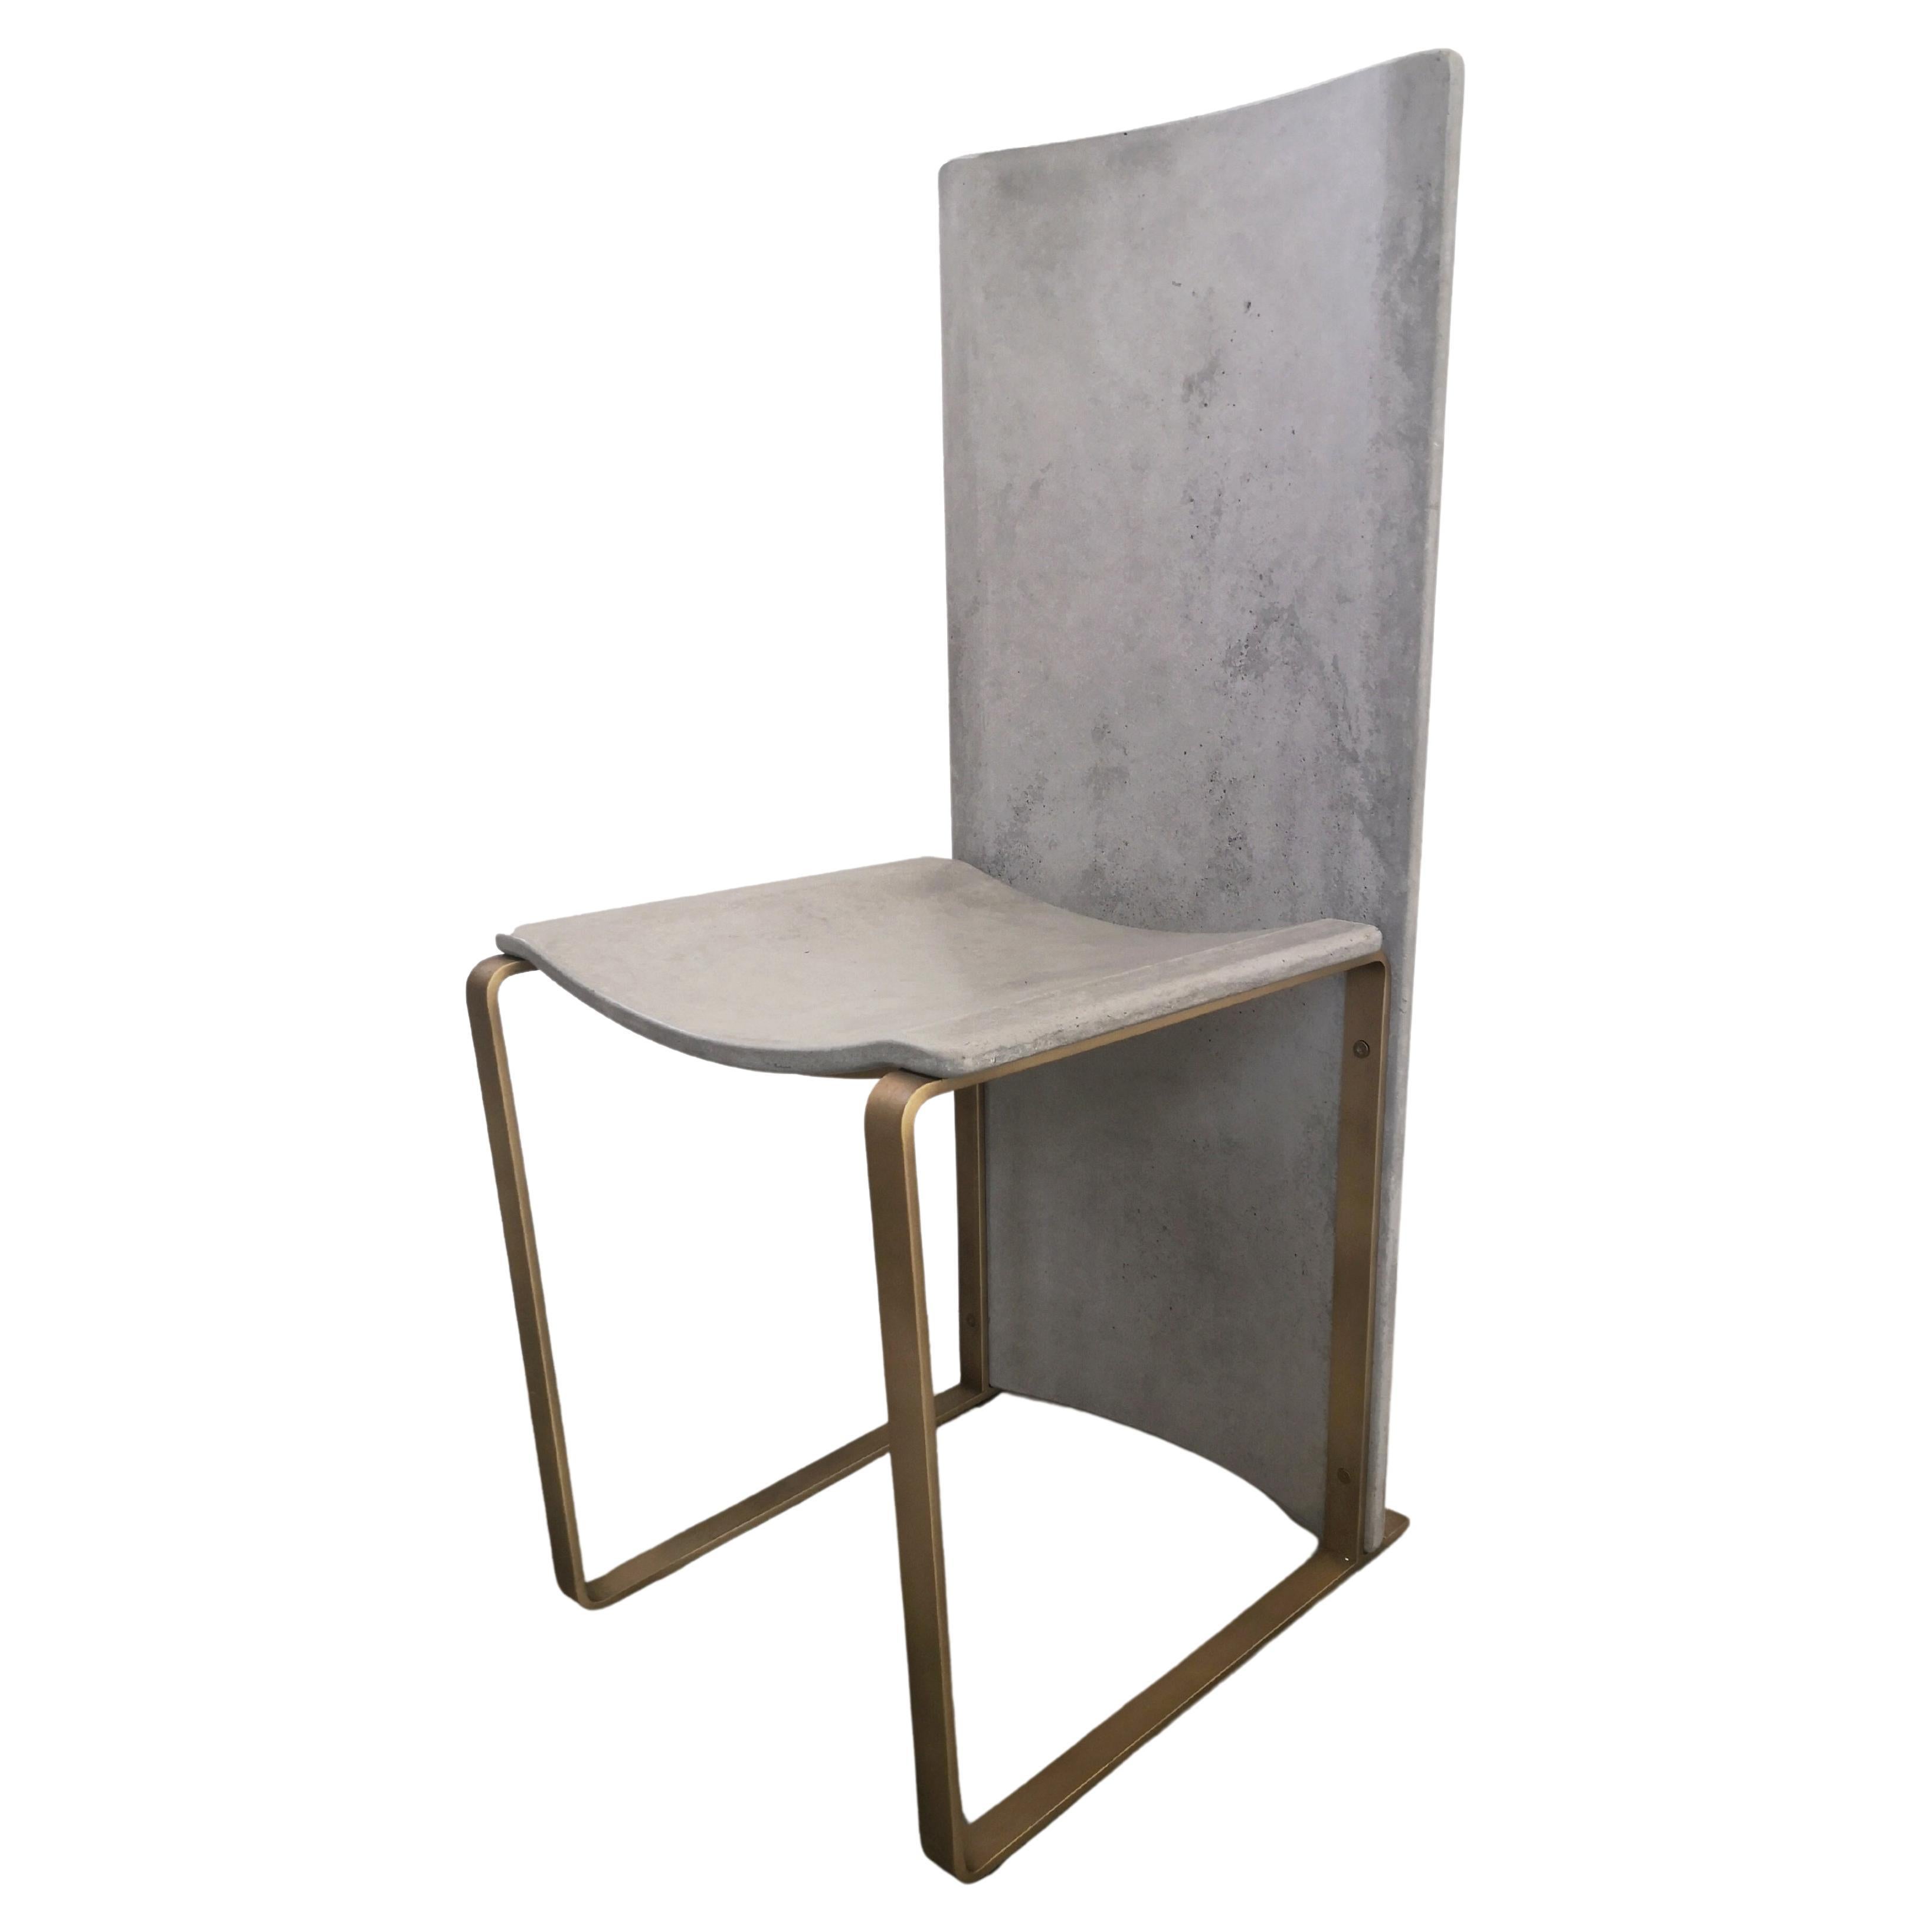 Rubeda concrete chair design Roberto Giacomucci 2018 For Sale